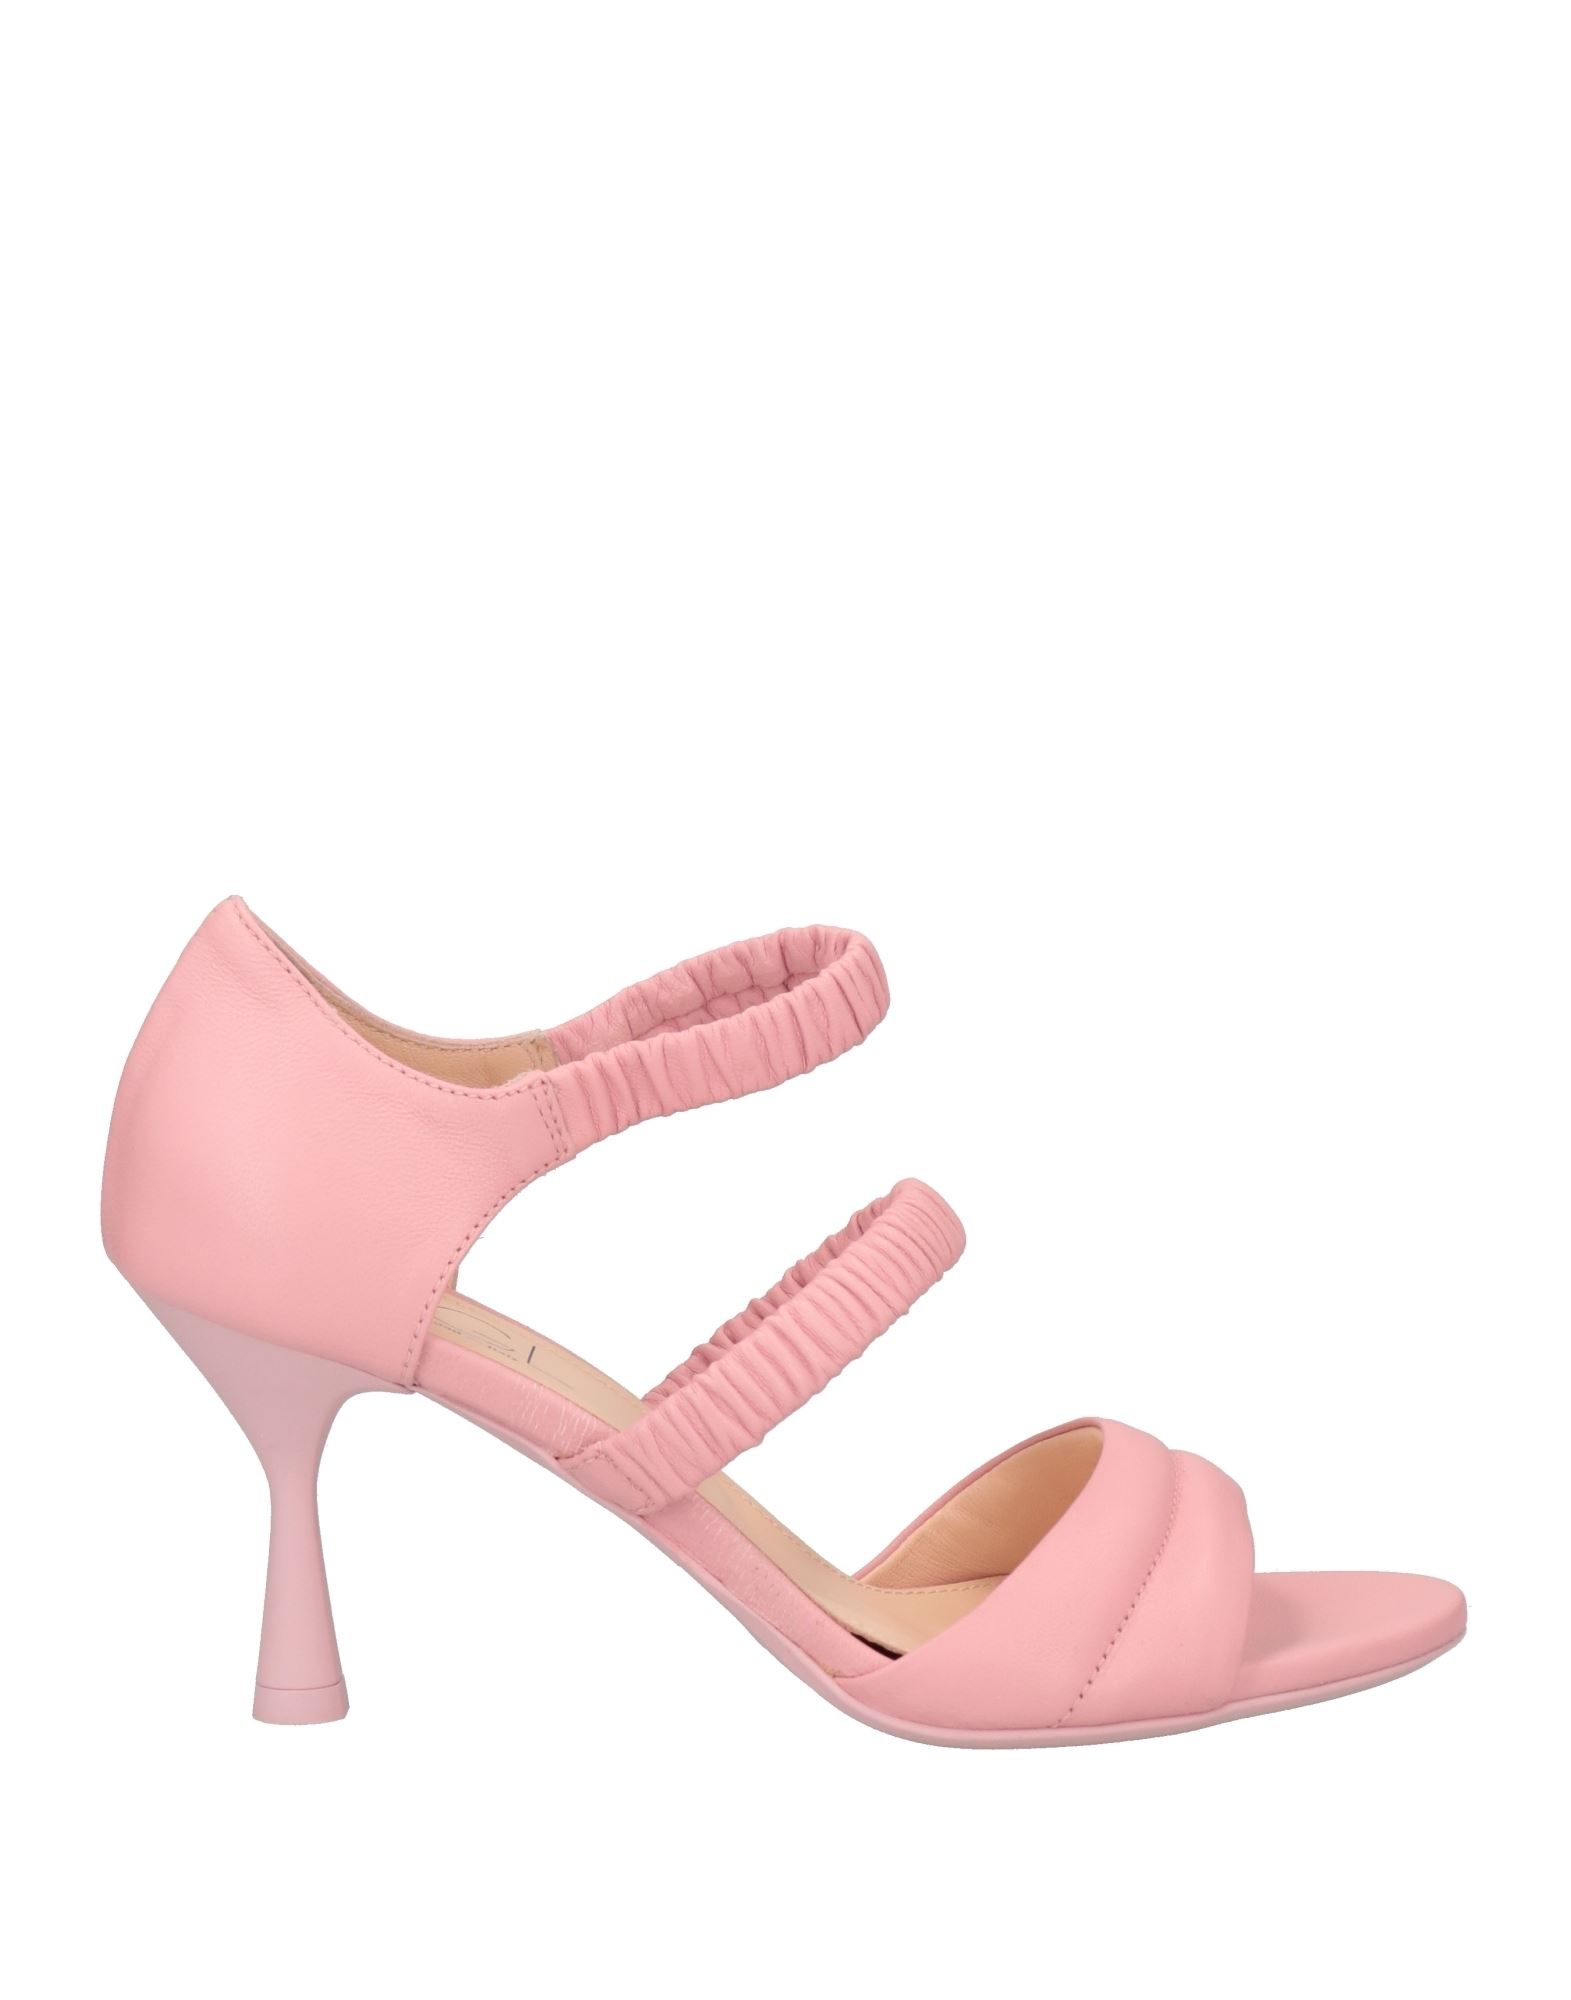 Agl Attilio Giusti Leombruni Sandals In Pink